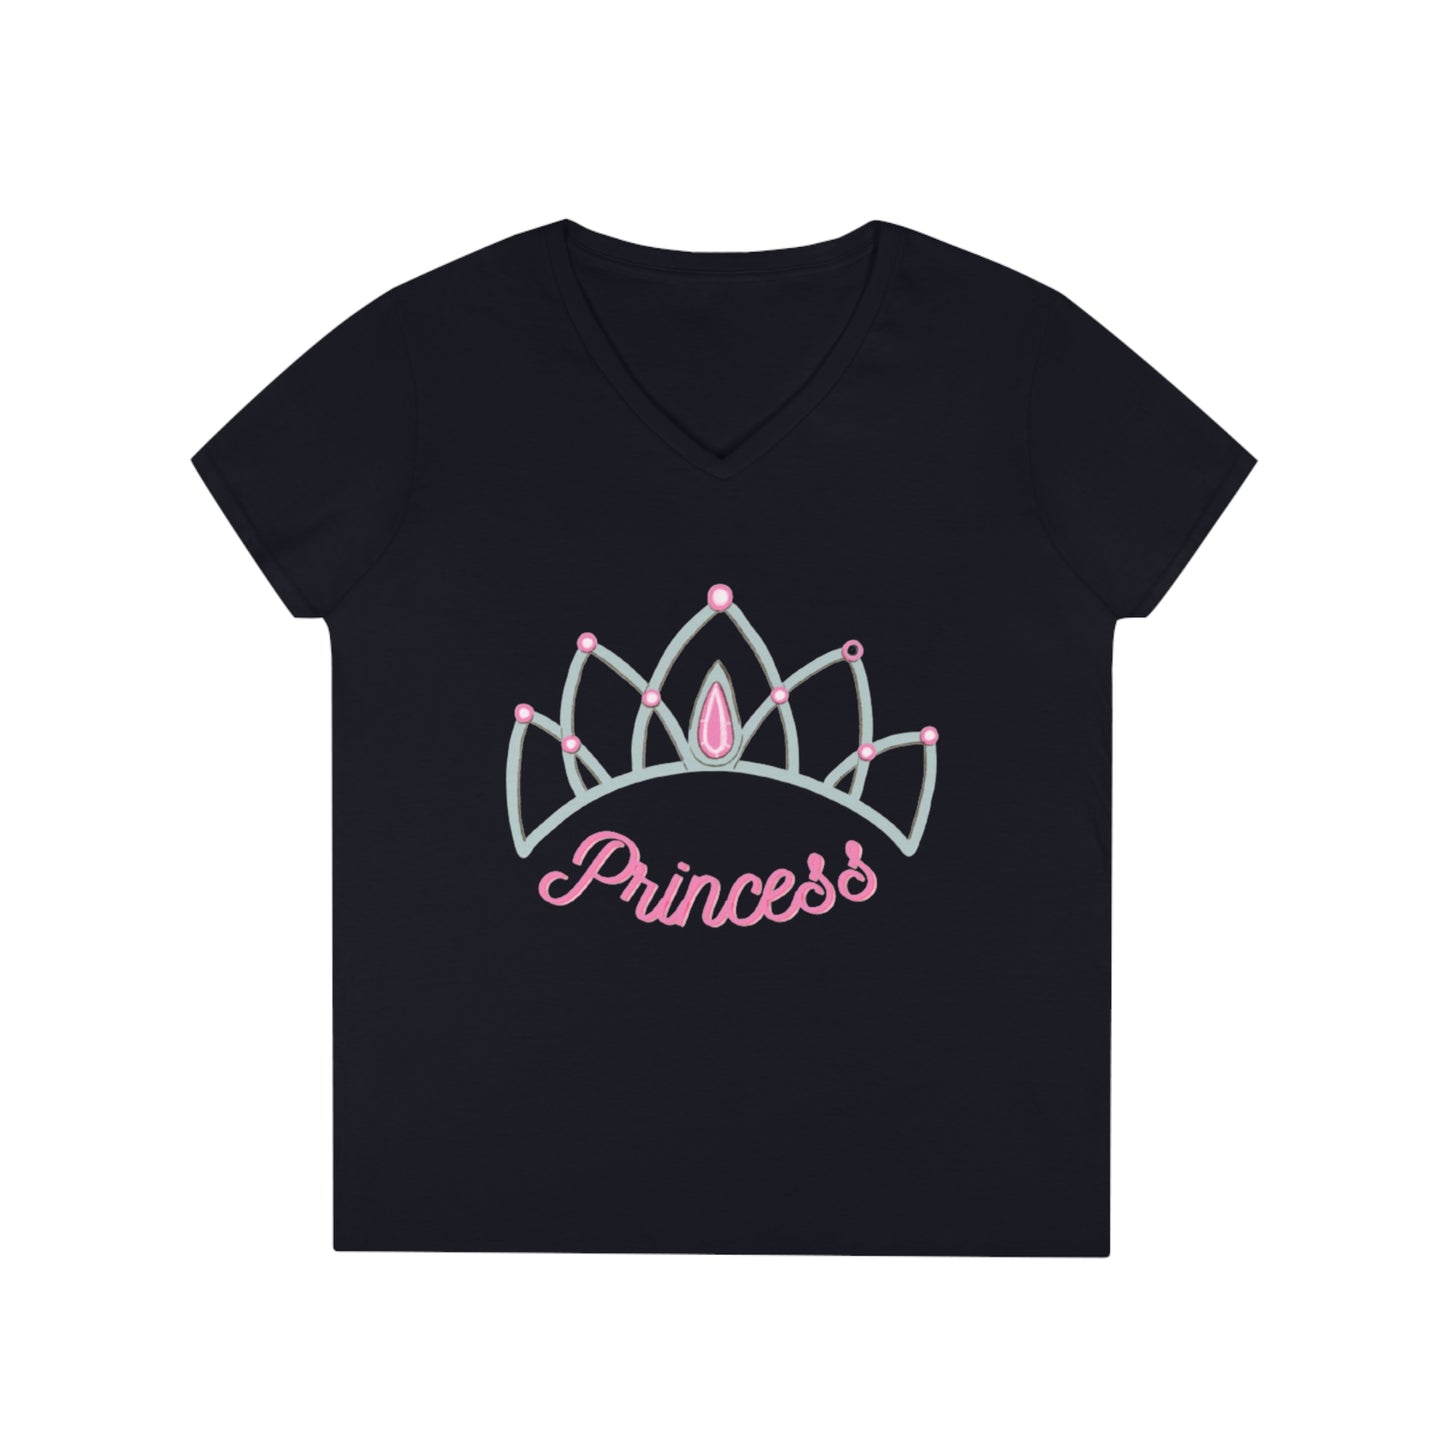 Princess V-Neck T-Shirt